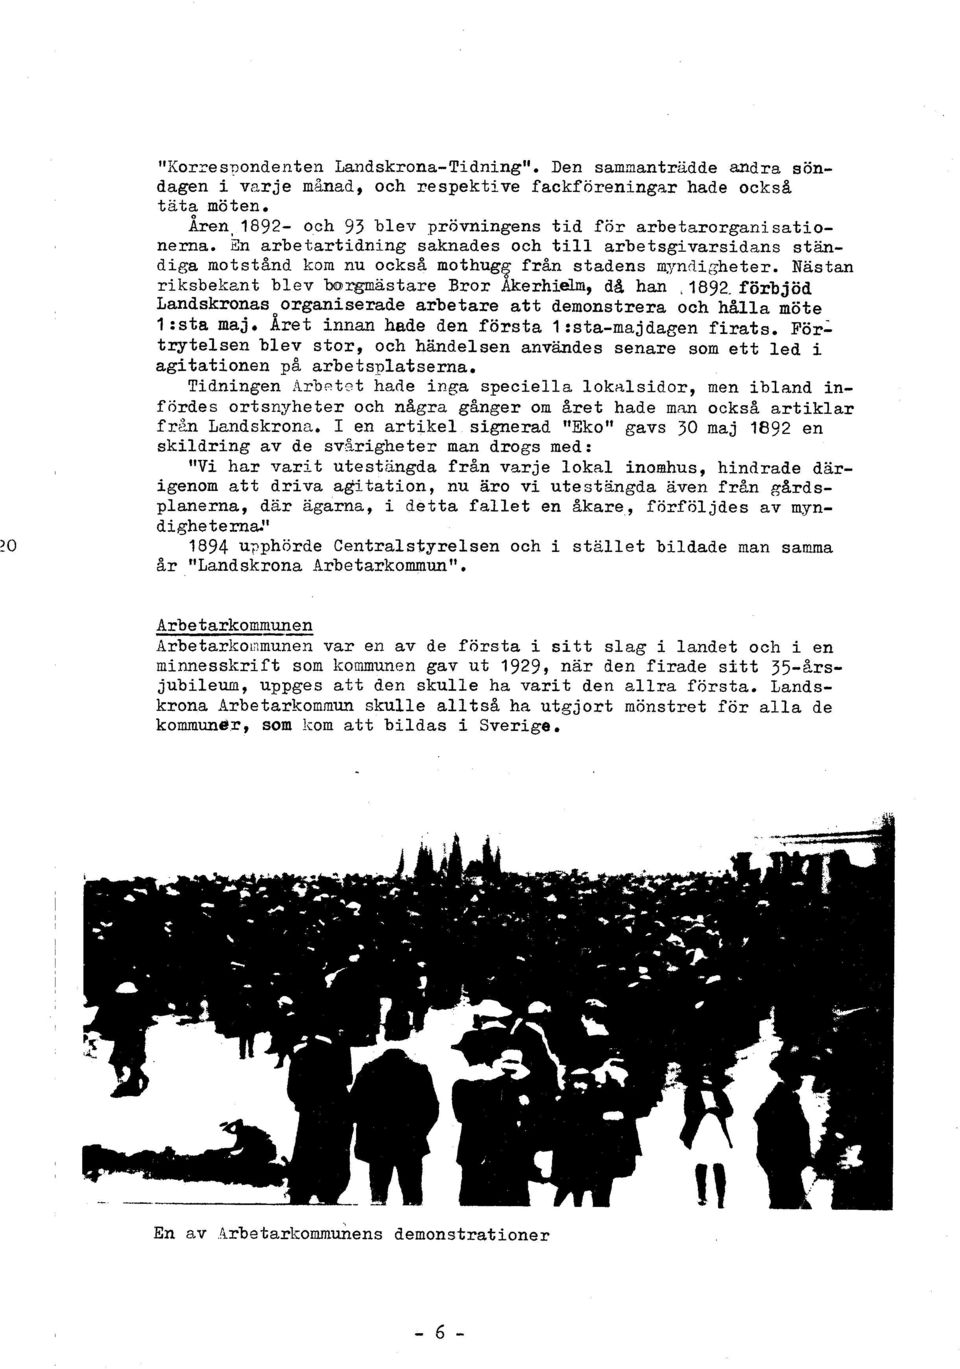 förbjöd Landskronas organiserade arbetare att demonstrera och hålla möte l :sta maj, Aret innan hade den första I :sta-majdagen firats.